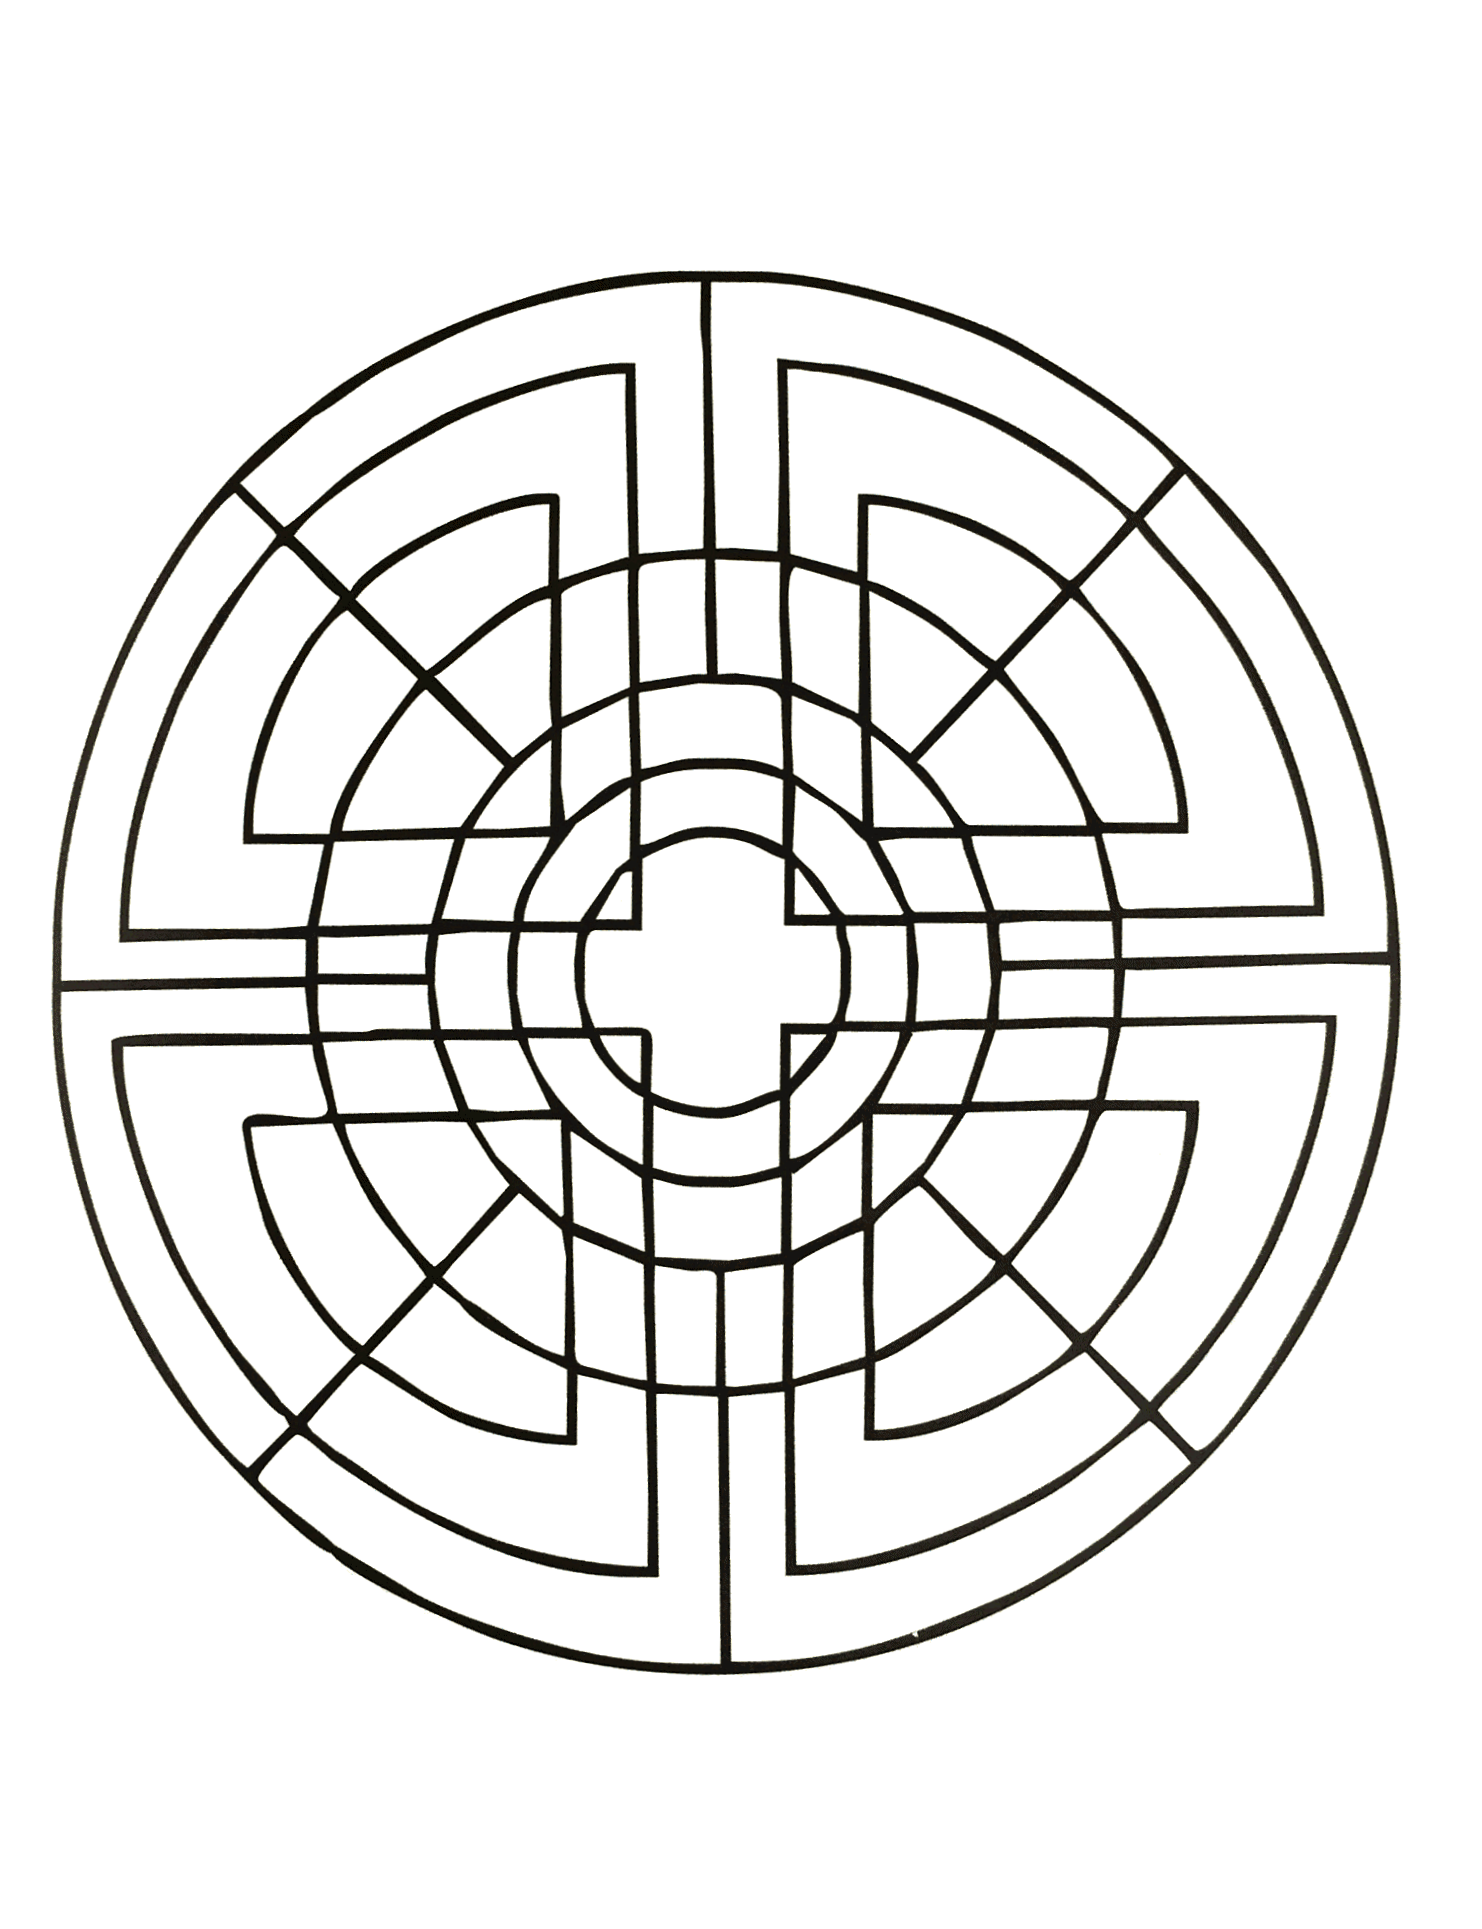 Magnifique mandala symétrique avec des formes géométrique (triangles, cercles ainsi qu'une croix au centre).